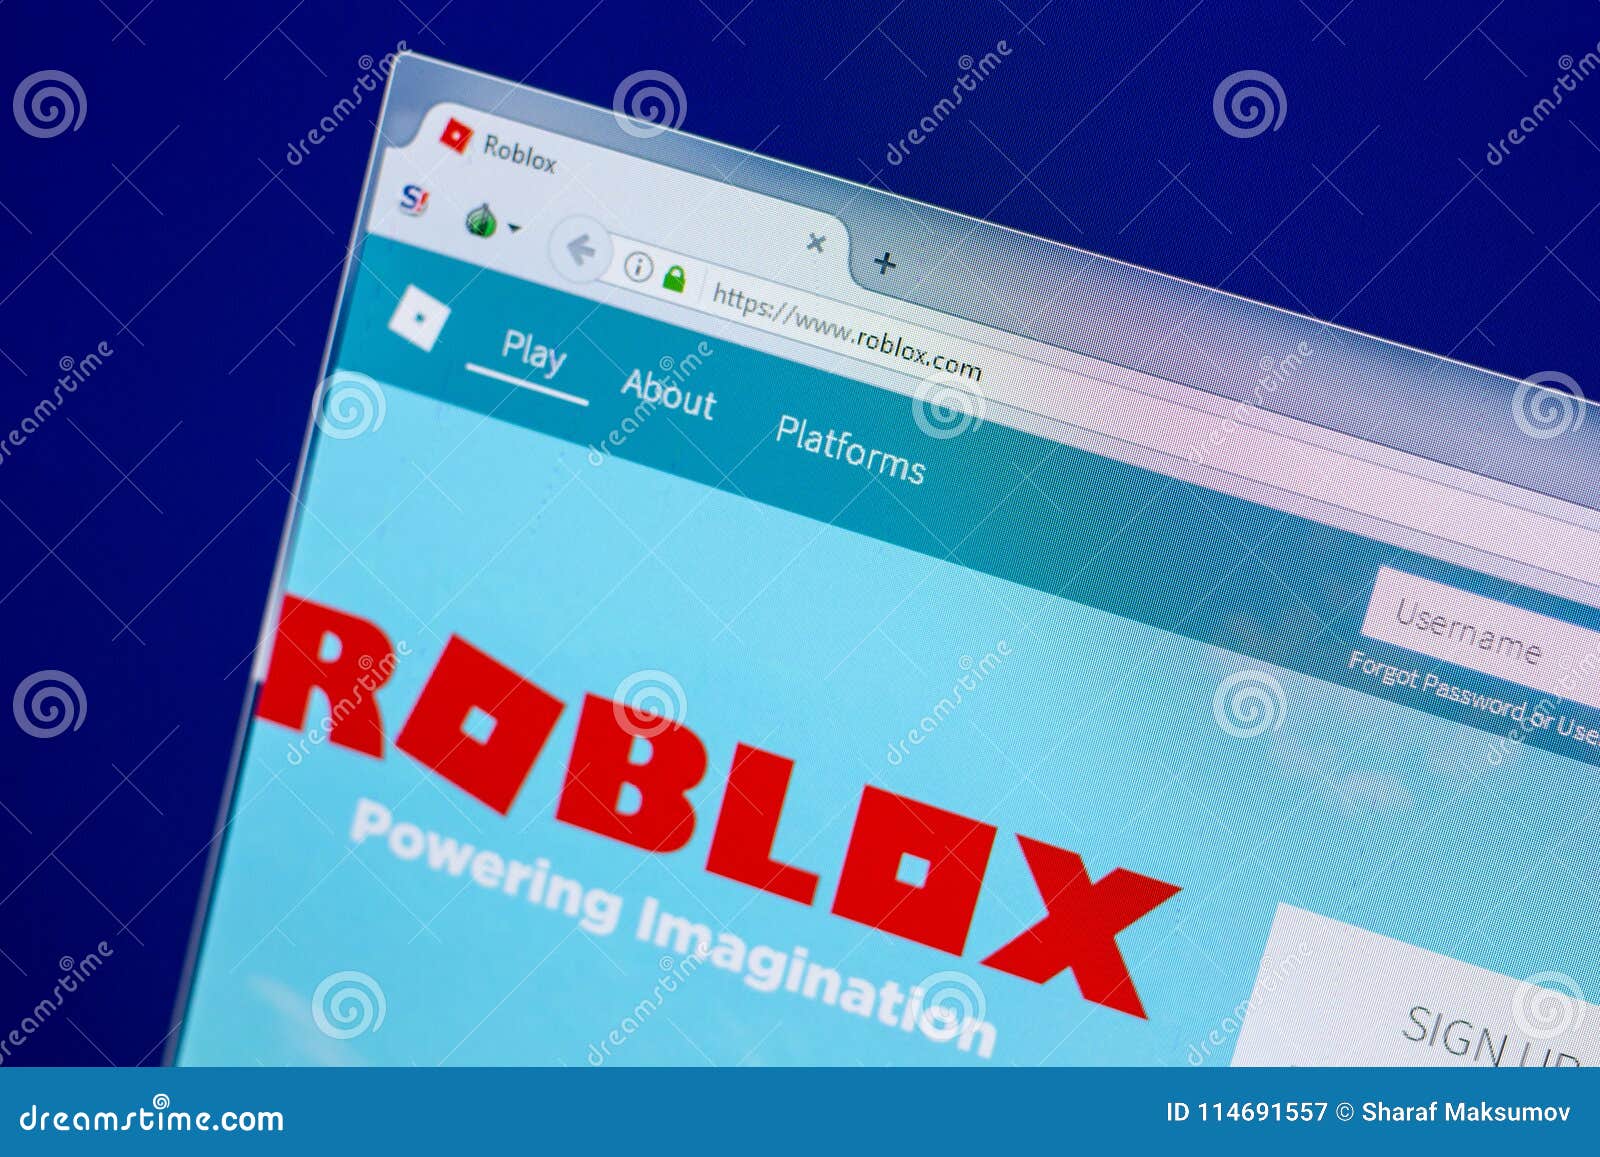 Roblox. con